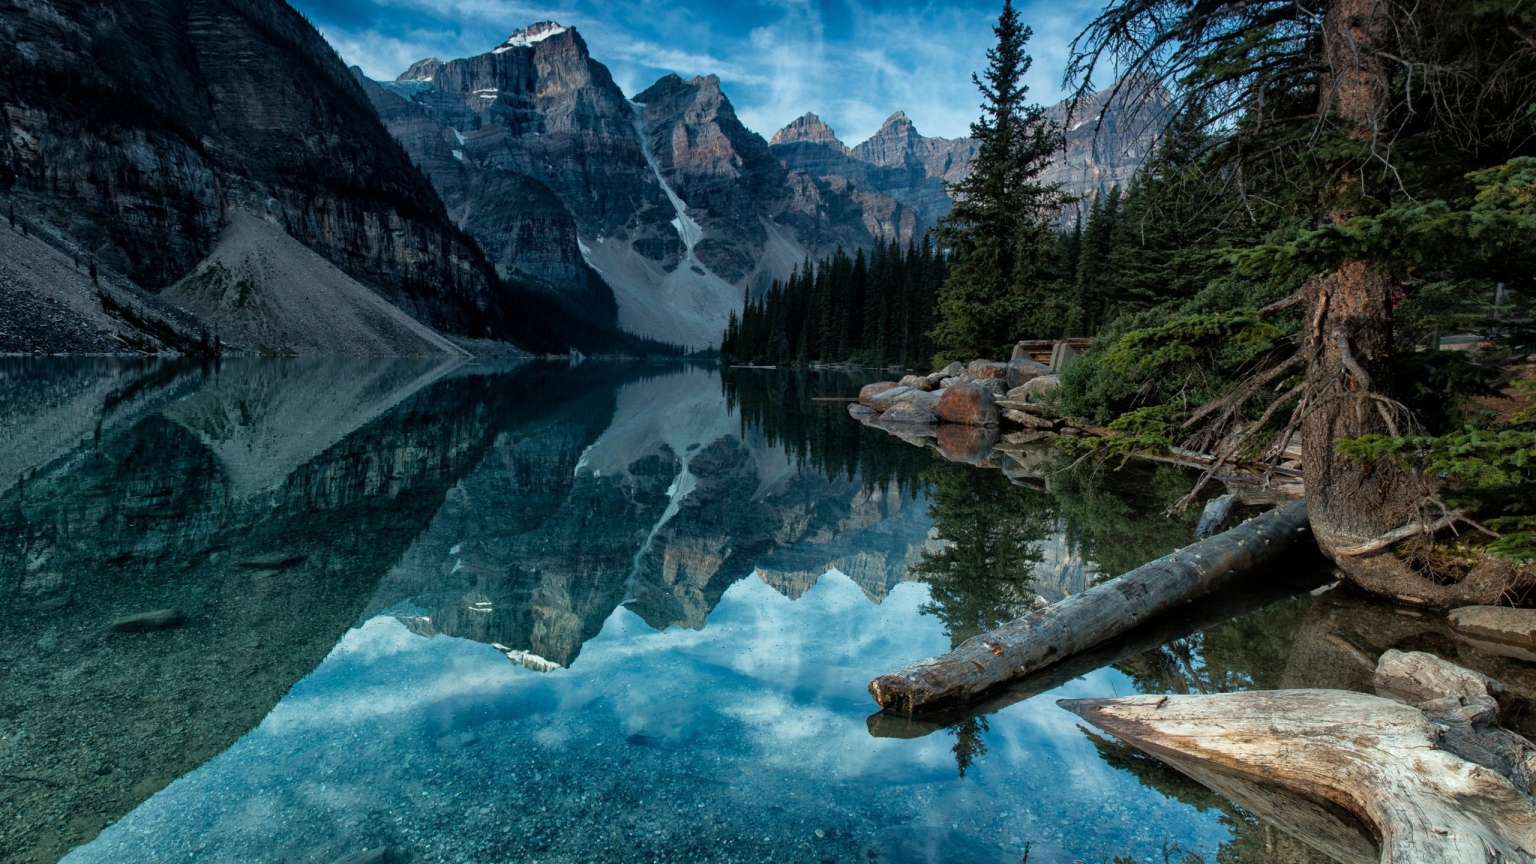 Moraine Lake Alberta Canada for 1536 x 864 HDTV resolution